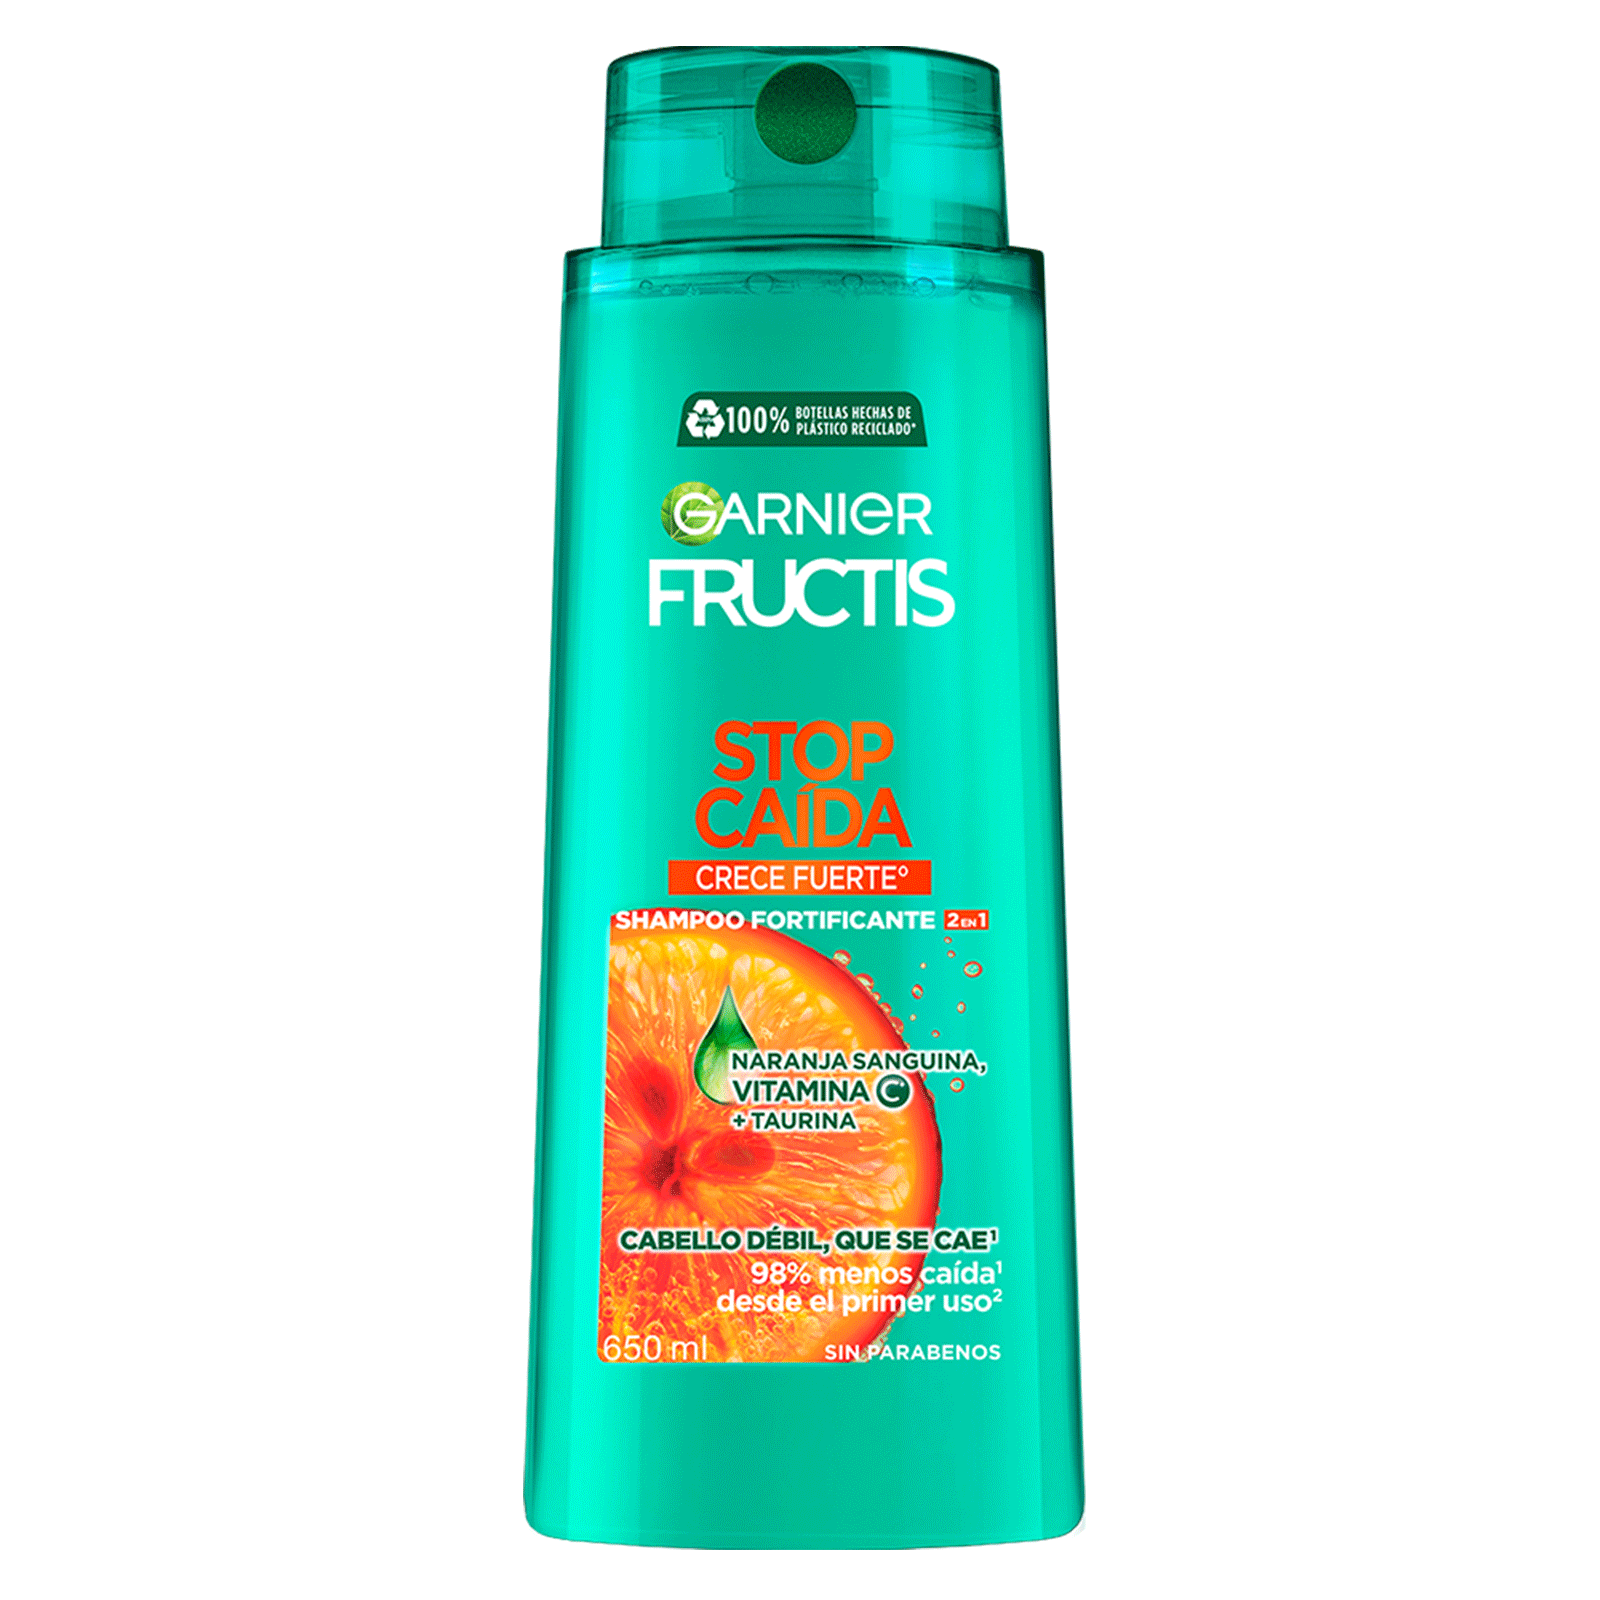 Shampoo Garnier Fructis Stop Caída Crece Fuerte con vitamina C° que reduce la caída del pelo con formula vegana para cabello debil